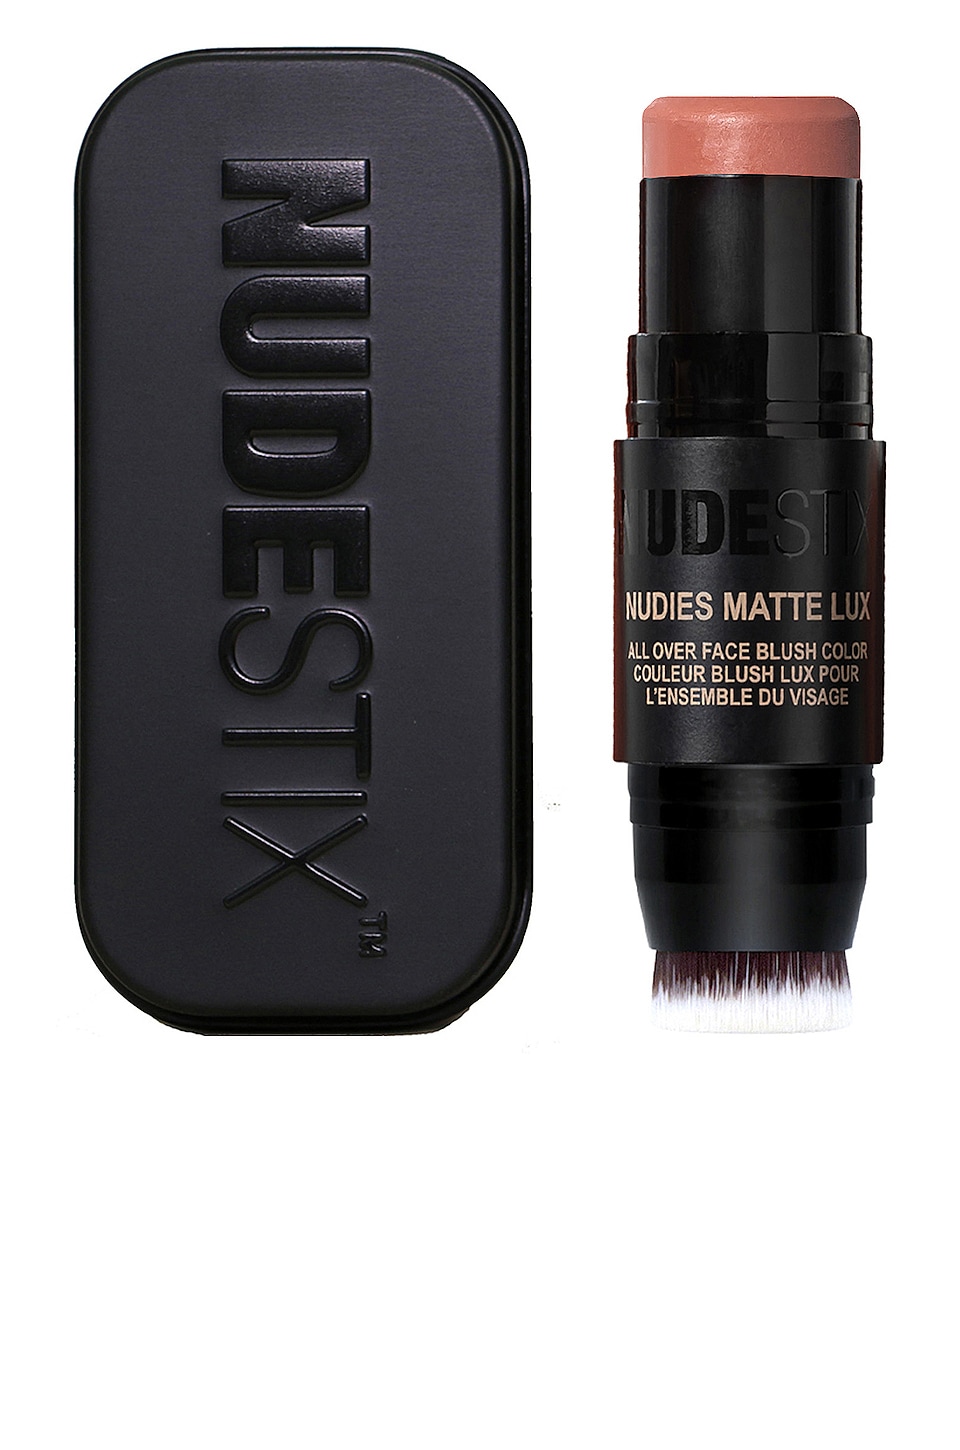 Румяна NUDESTIX Nudies Matte Lux All Over Face Blush, цвет Nude Buff